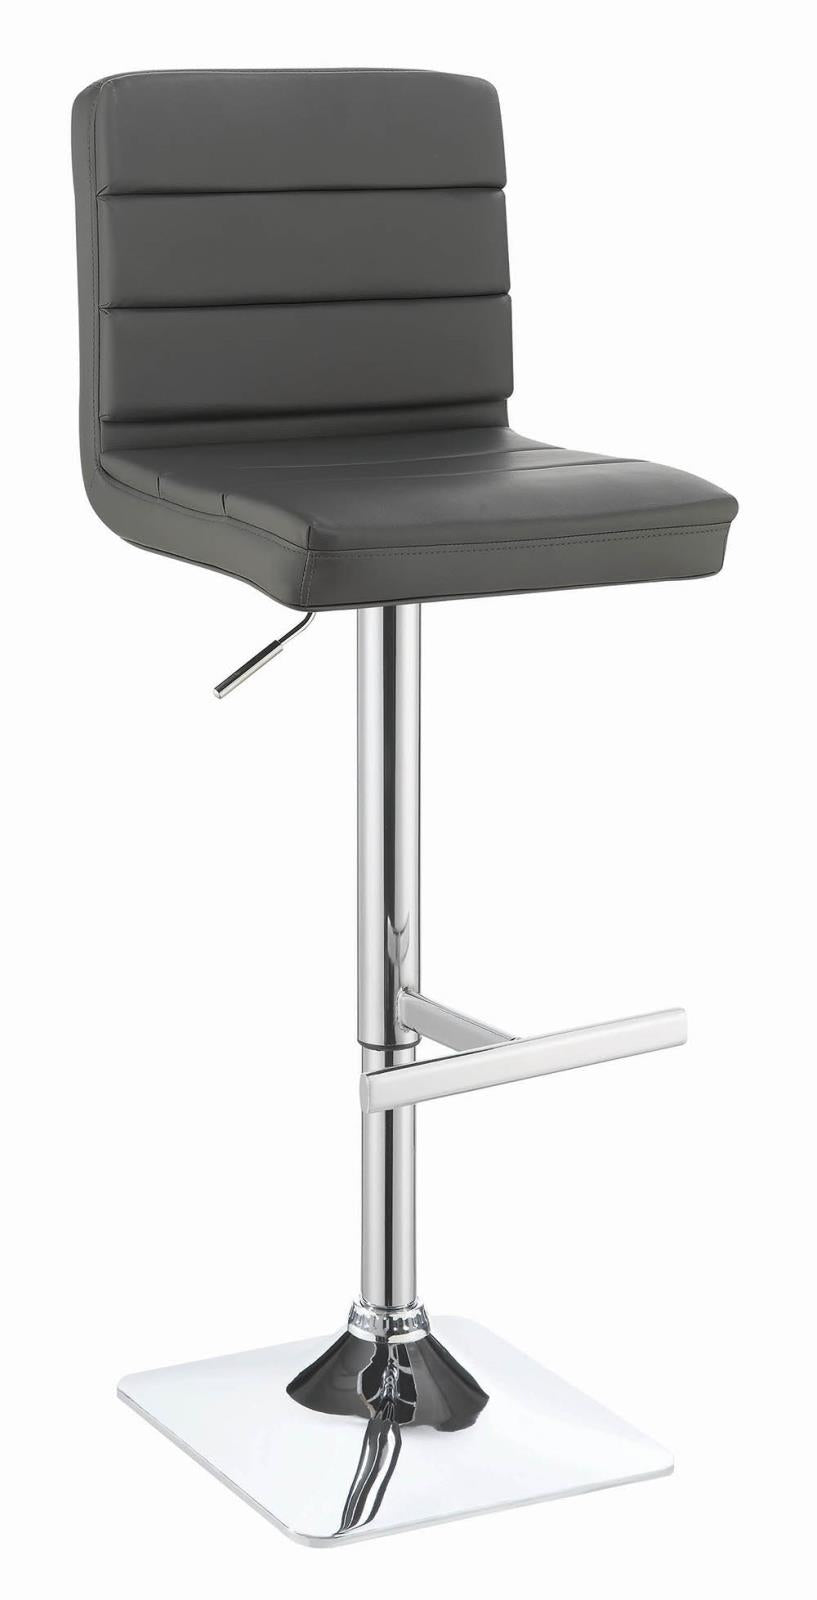 Bianca Gray/Chrome Upholstered Adjustable Bar Stools, Set of 2 - 120696 - Bien Home Furniture &amp; Electronics